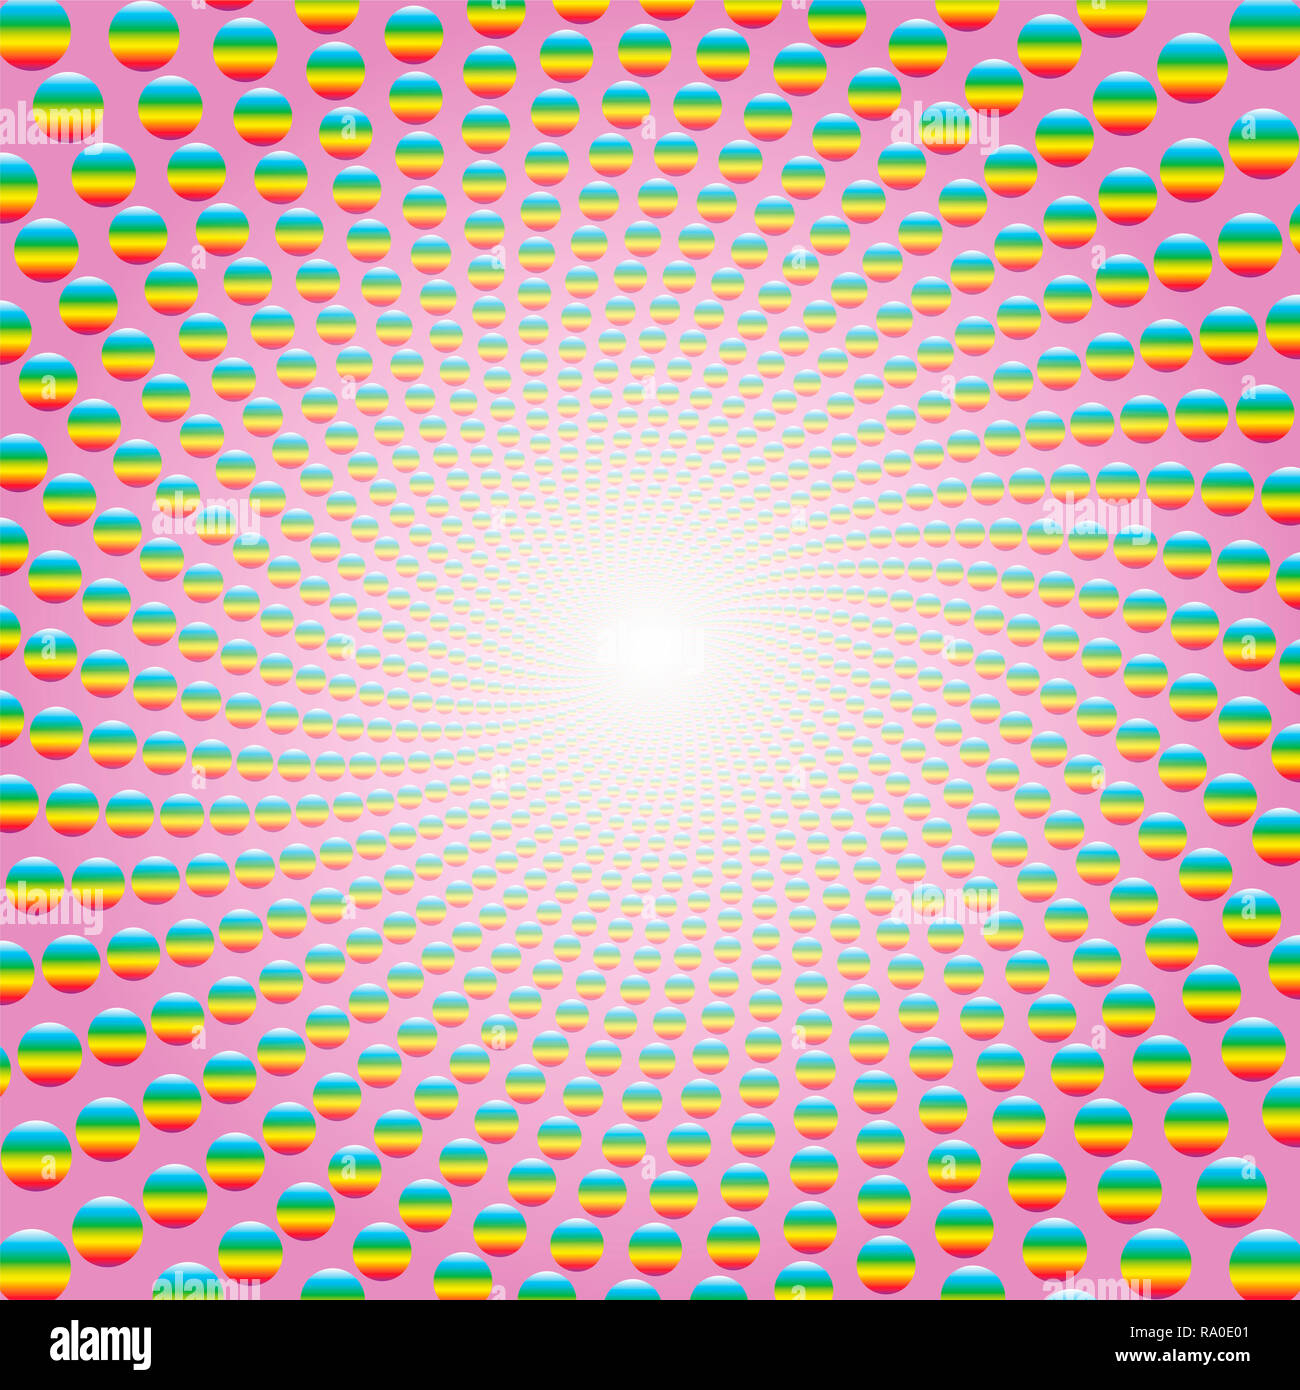 Rainbow farbige Kugeln bilden eine Spirale auf rosa Hintergrund mit hellen weißen Mitte. Twisted kreisförmigen Hintergrund Illustration, hypnotisch und psychedelischen Stockfoto